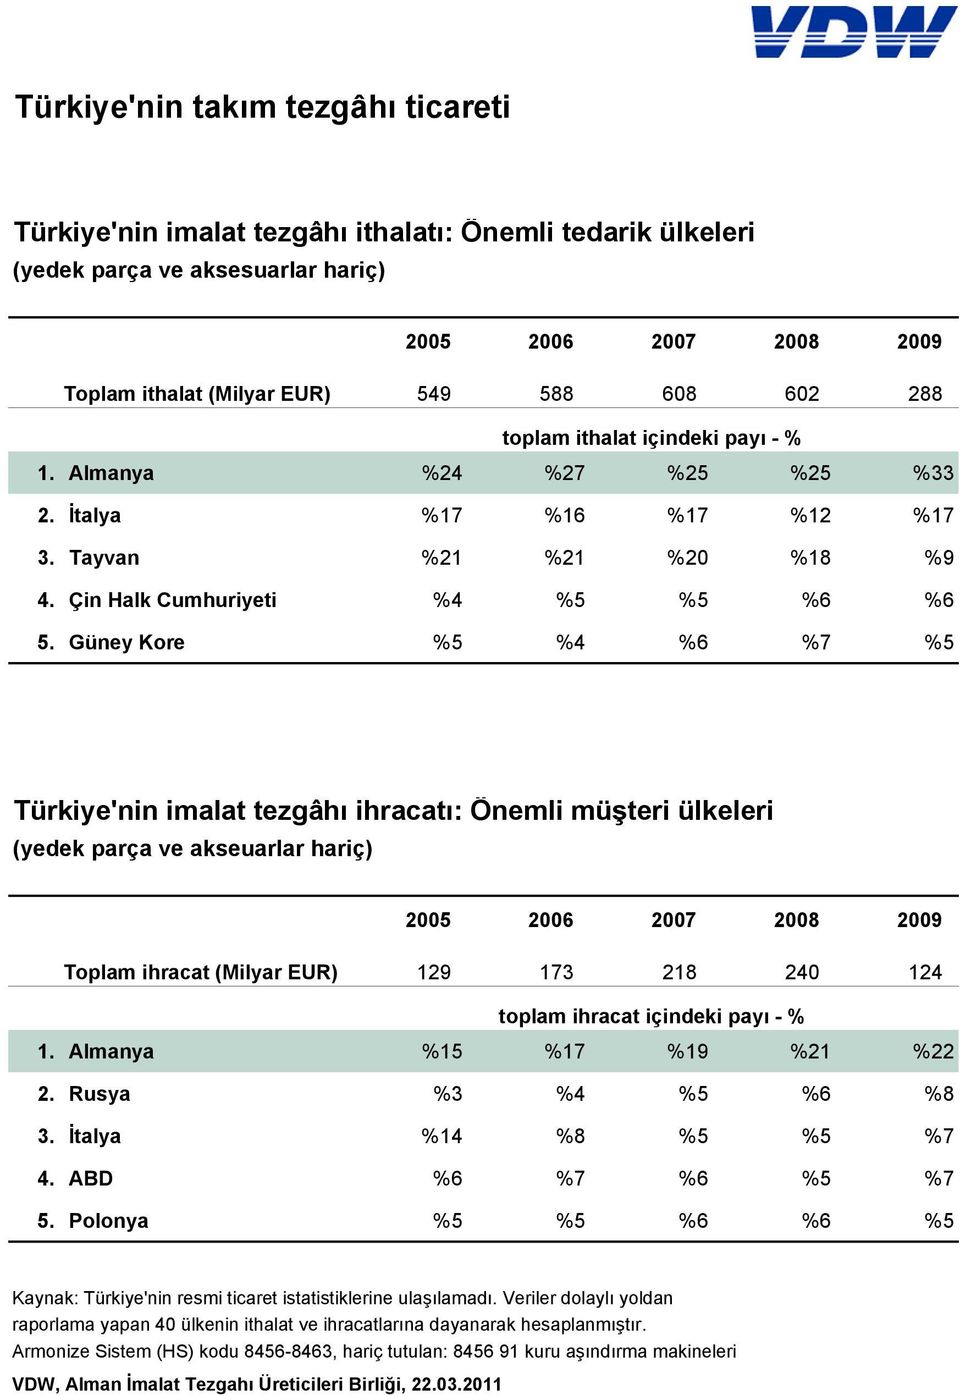 Güney Kore %5 %4 %6 %7 %5 Türkiye'nin imalat tezgâhı ihracatı: Önemli müşteri ülkeleri (yedek parça ve akseuarlar hariç) 2005 2006 2007 2008 2009 Toplam ihracat (Milyar EUR) 129 173 218 240 124